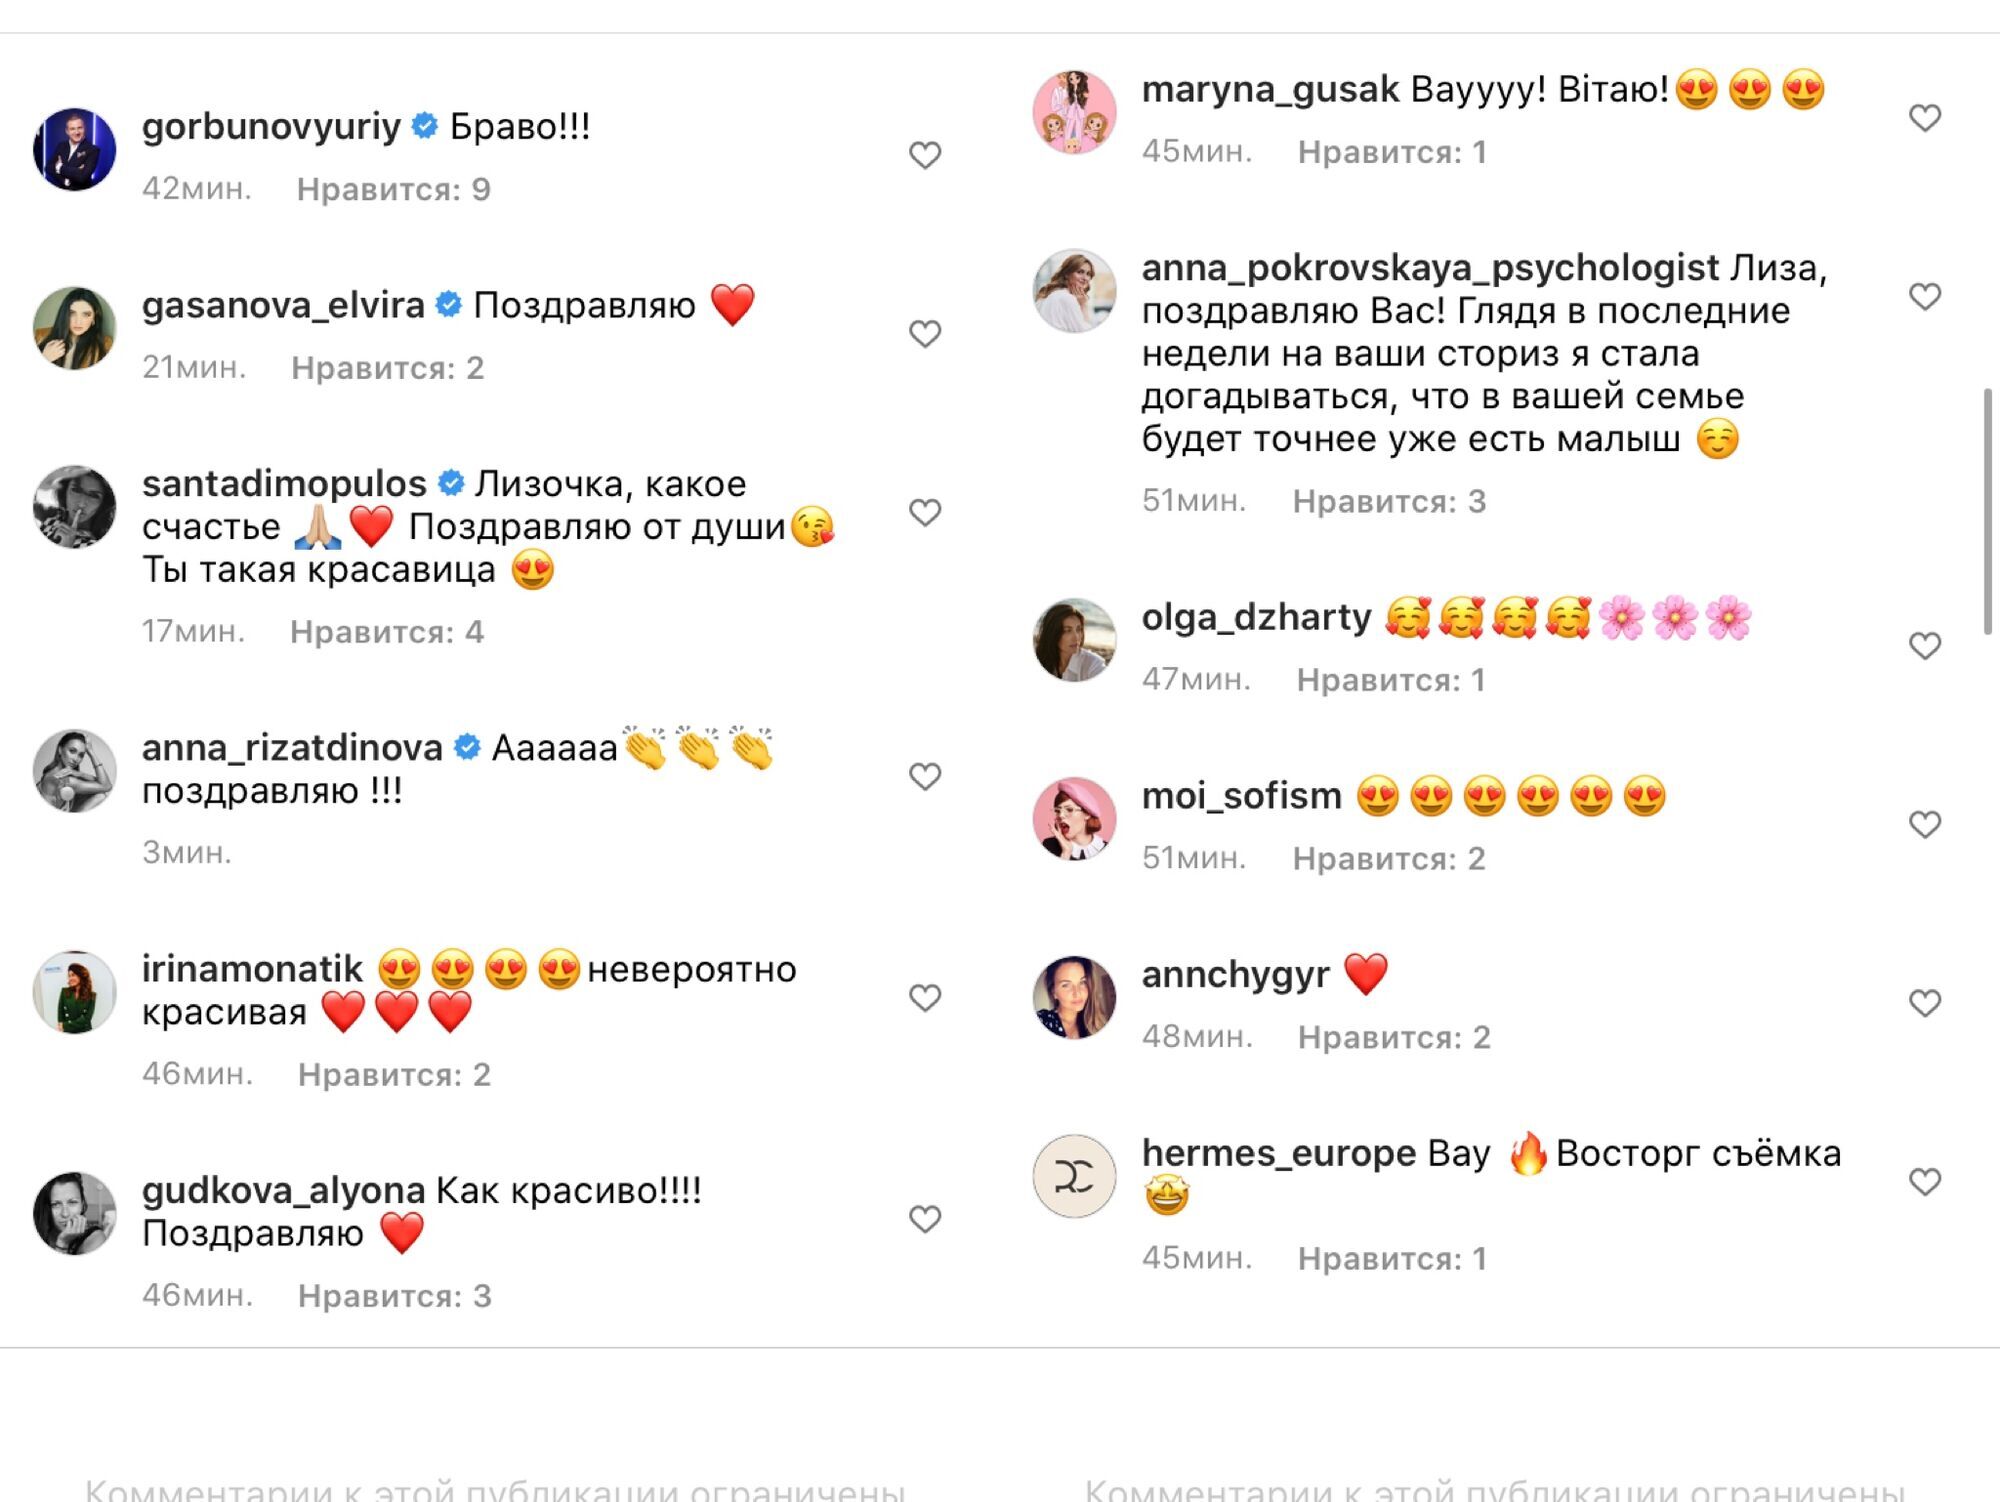 Комментарии под публикацией о беременности Юрушевой